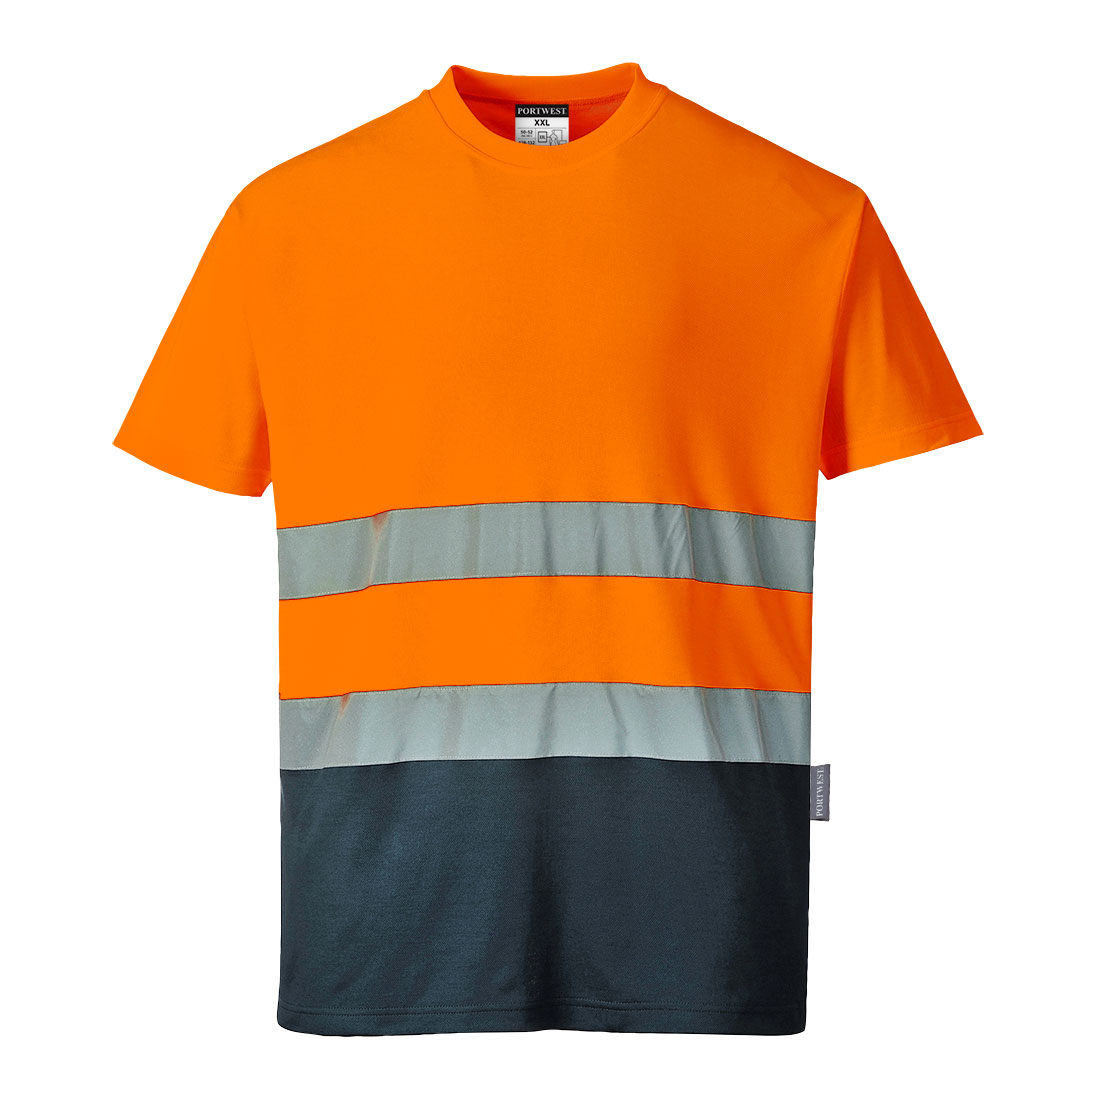 S173ONRL Velikost: L, Barva: Orange/Navy